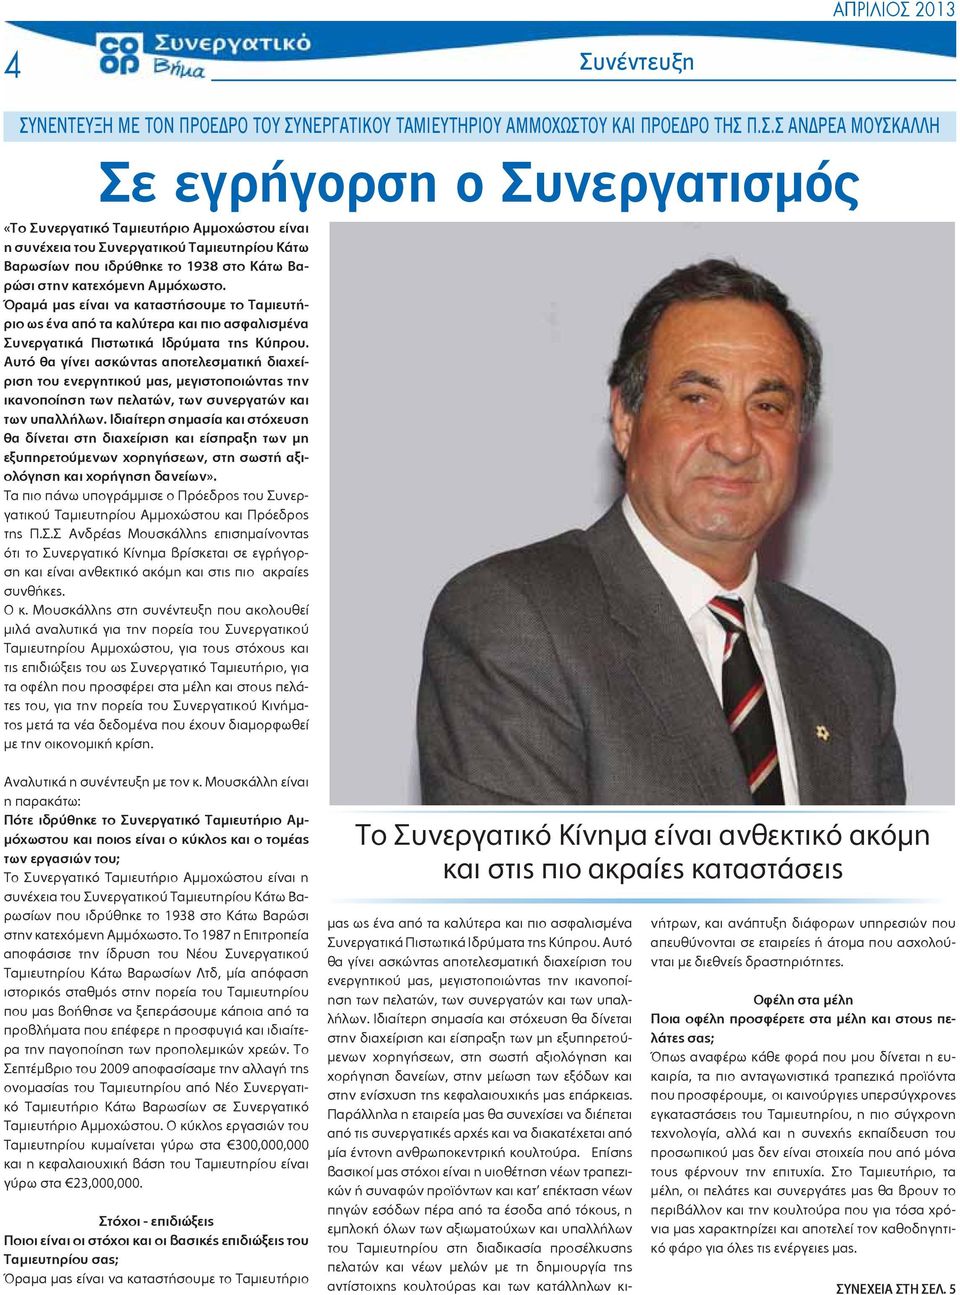 Όραμά μας είναι να καταστήσουμε το Ταμιευτήριο ως ένα από τα καλύτερα και πιο ασφαλισμένα Συνεργατικά Πιστωτικά Ιδρύματα της Κύπρου.